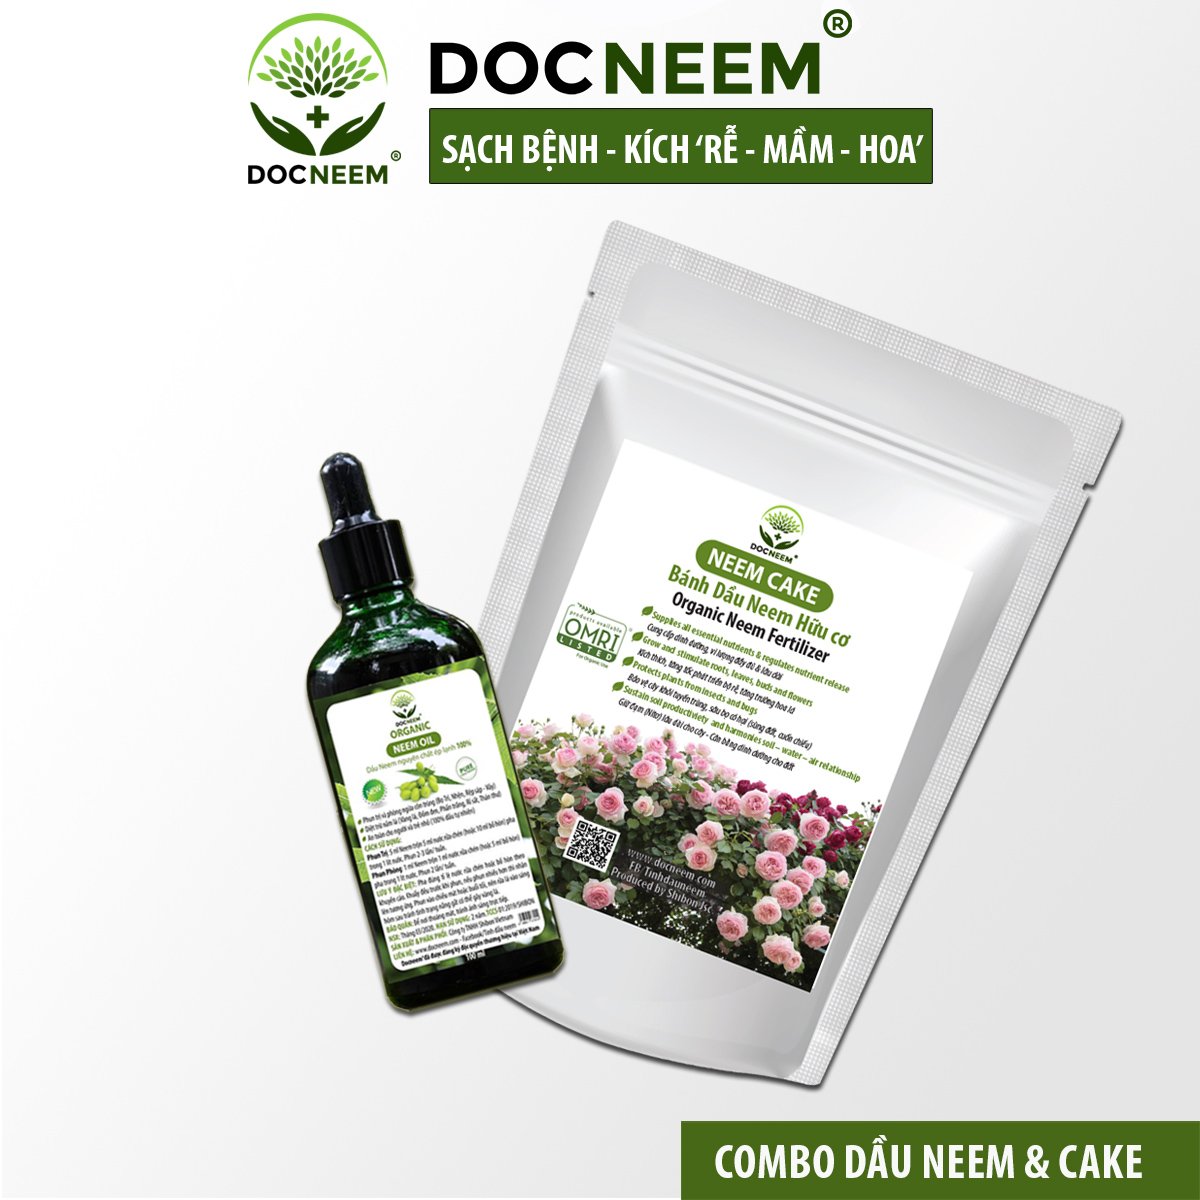 Combo Dầu Neem và Bánh dầu Neem hữu cơ DOCNEEM trị sâu bệnh, sùng đất cuốn chiếu, kích rễ hoa hồng chai 100ml và túi 1kg